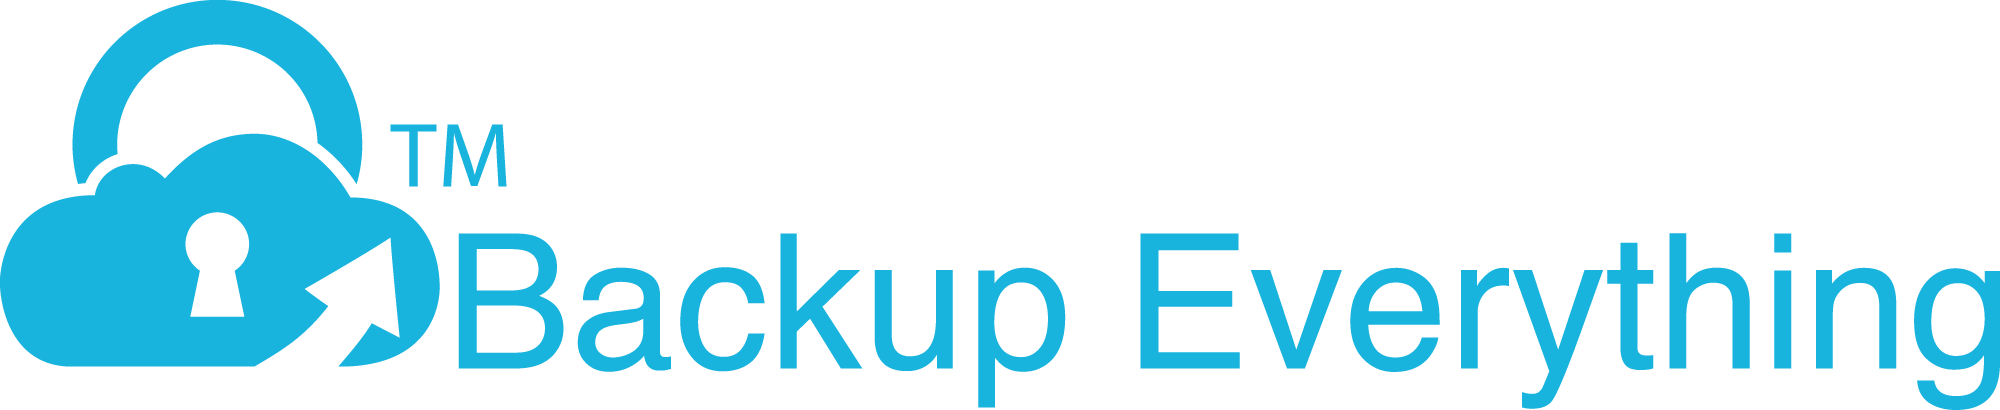 BackupEverything logo